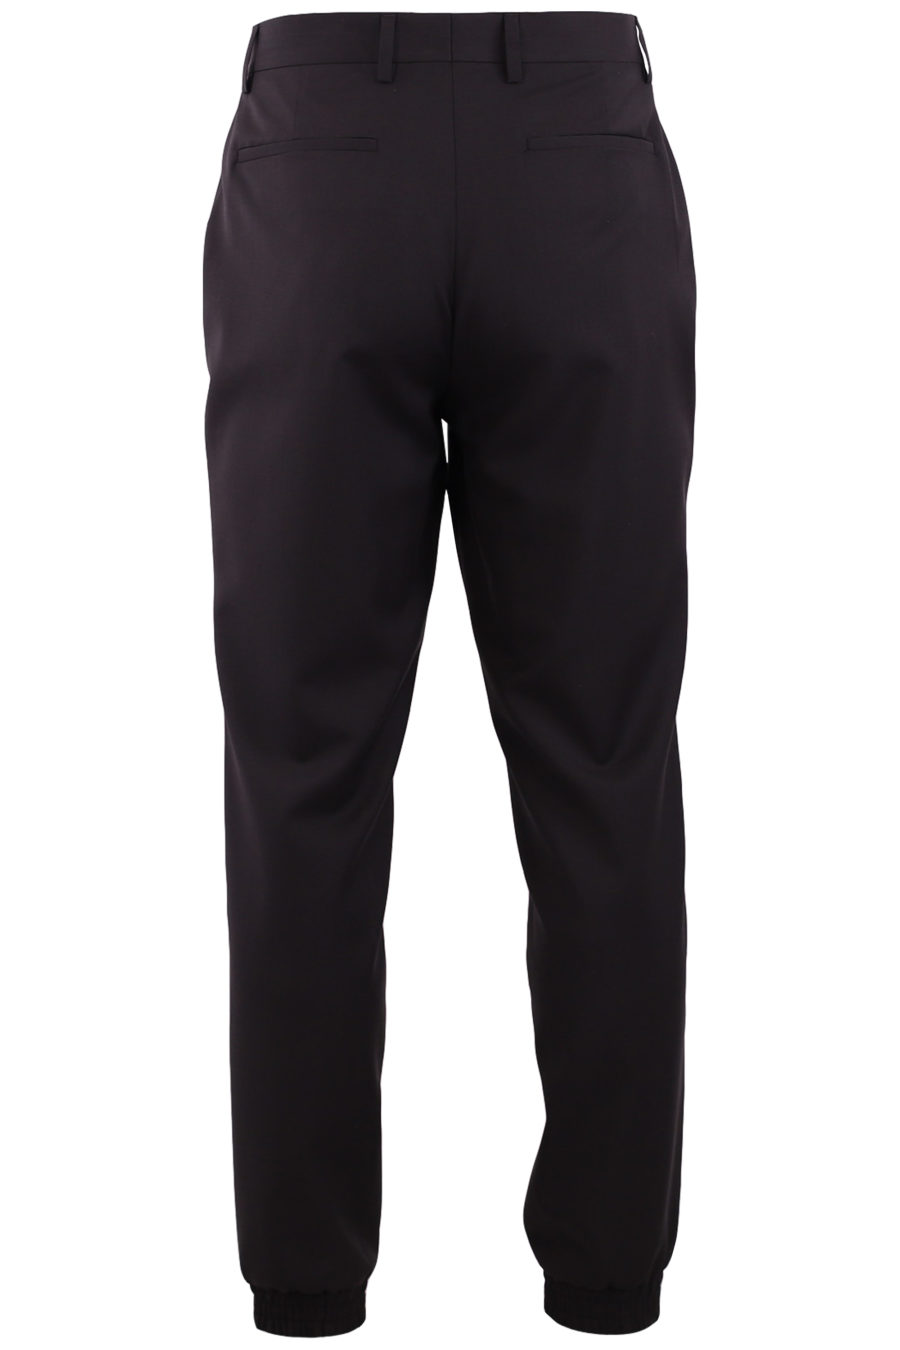 Pantalón jogger de color negro con logo - 4fd62ed881e1aff0c14f74e09e0a479c07b7c434